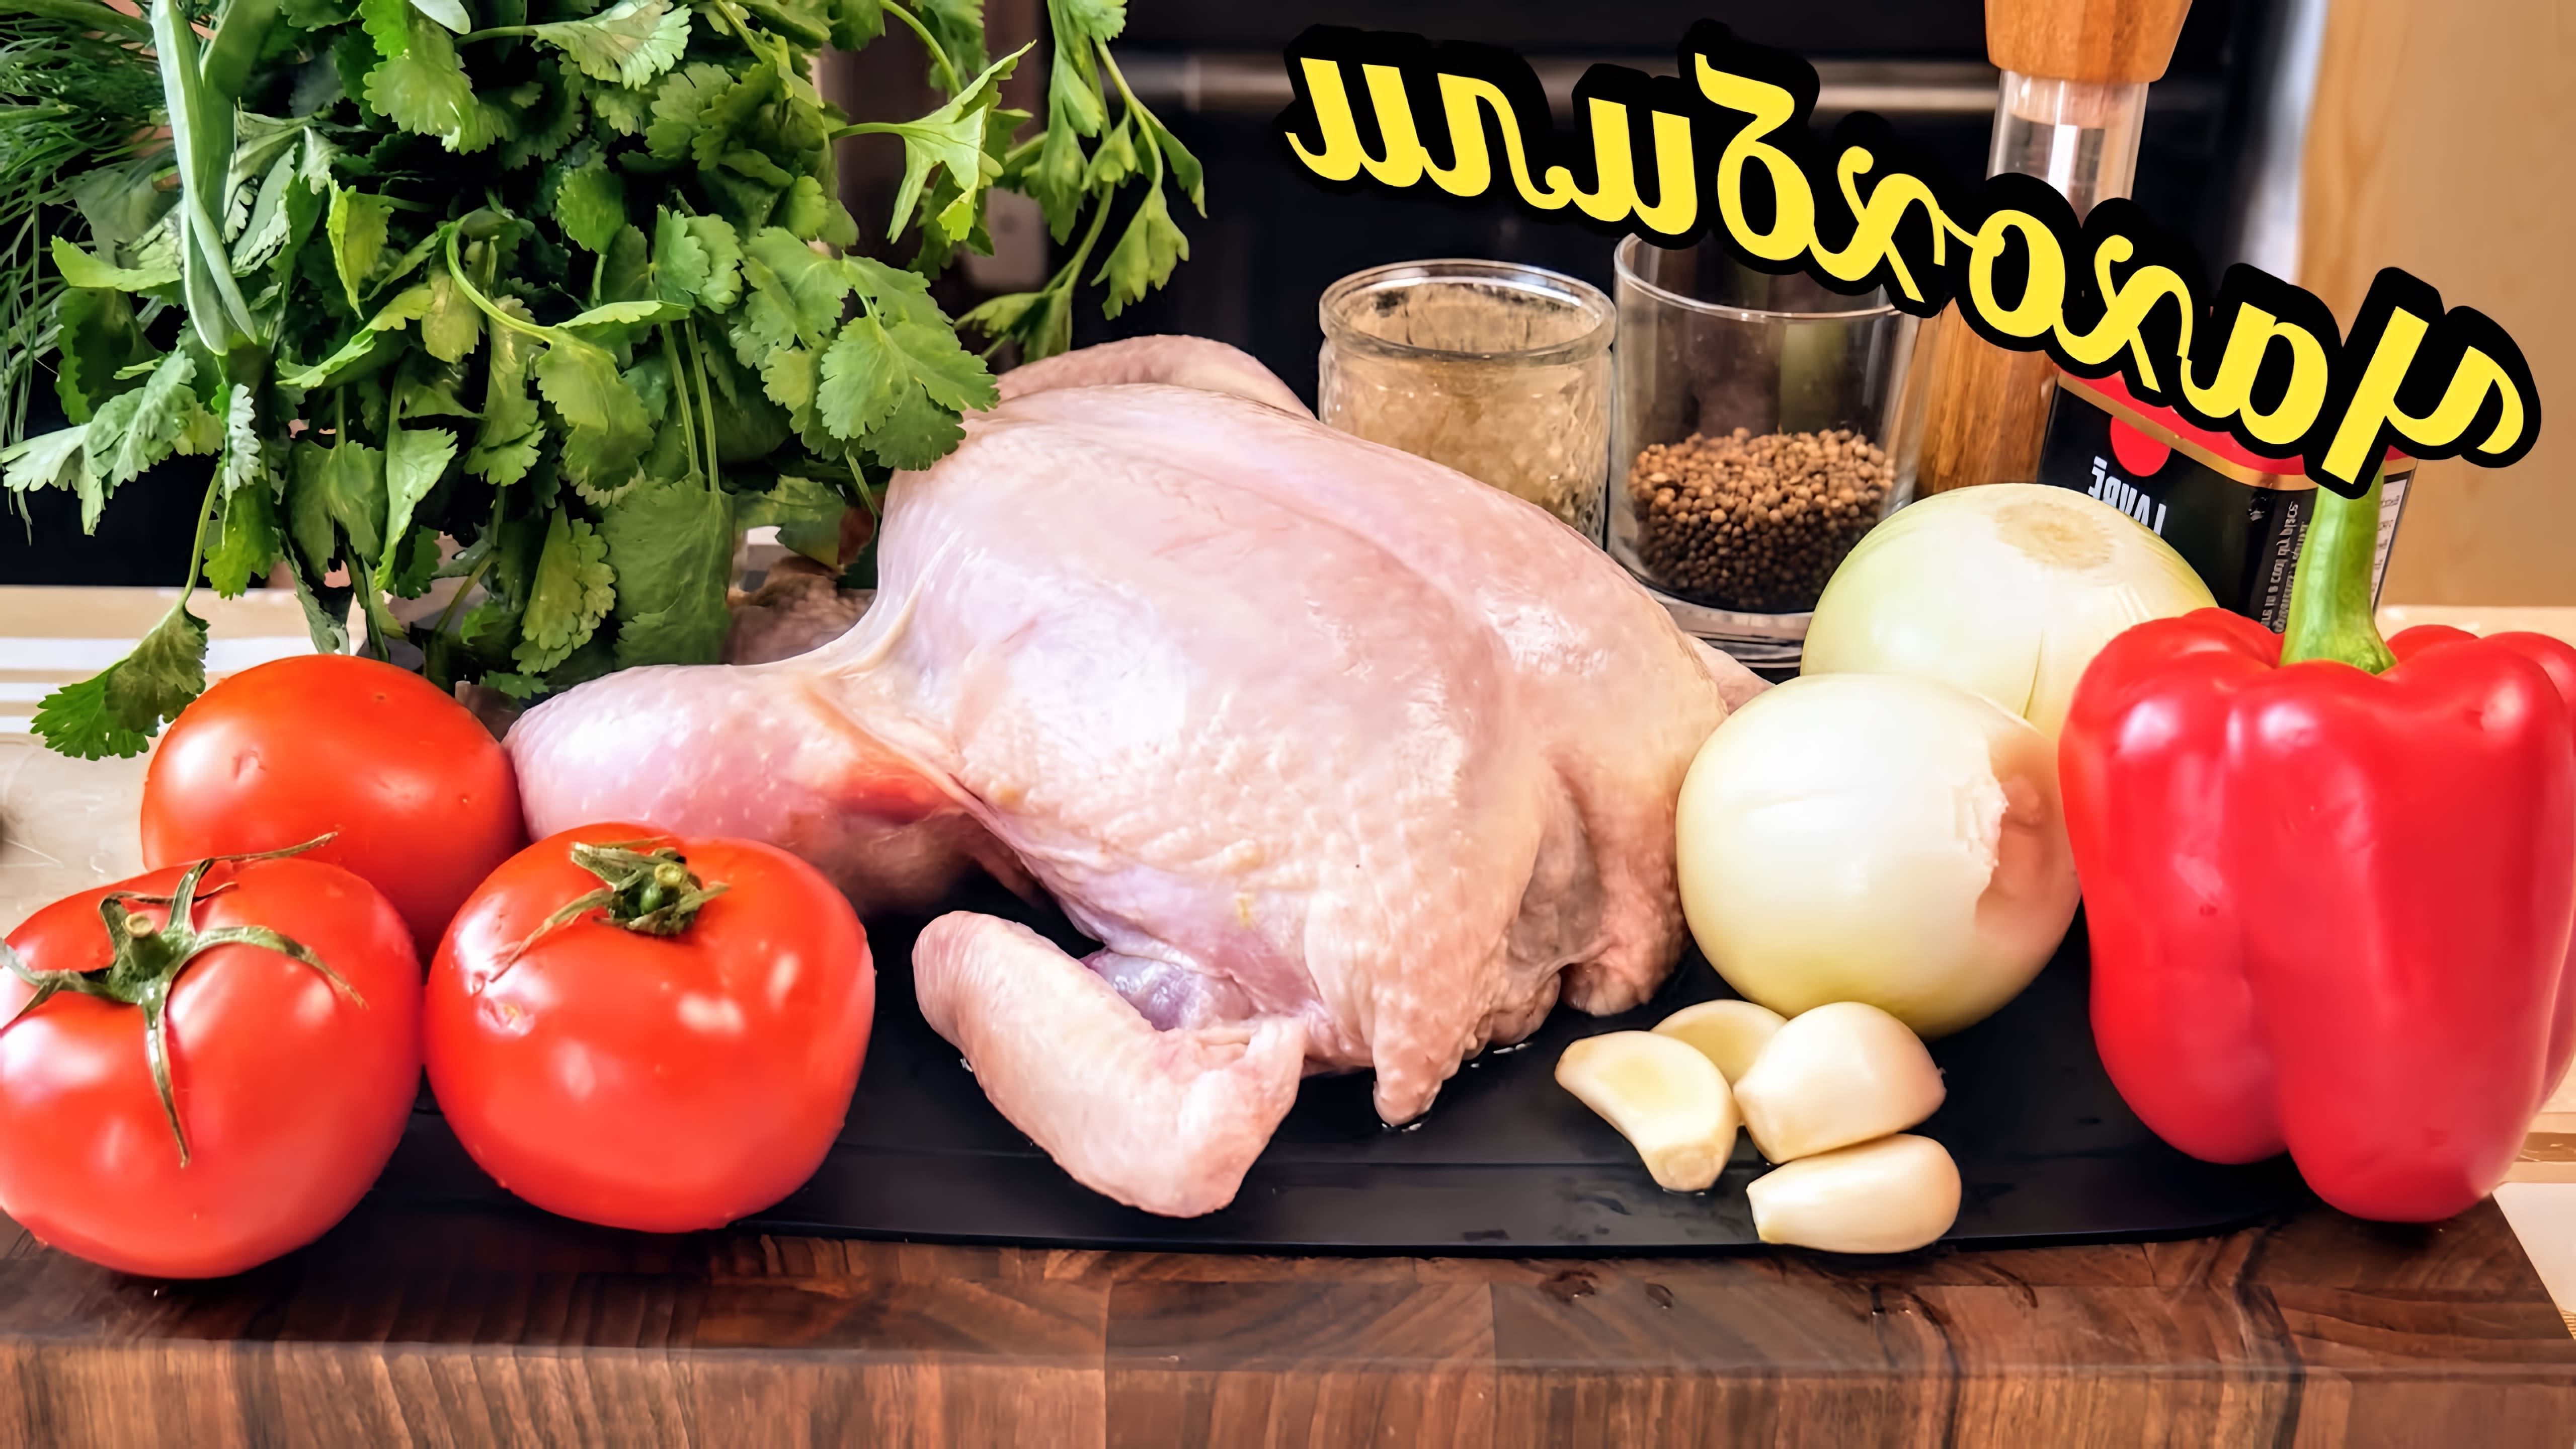 В этом видео демонстрируется процесс приготовления чахохбили, традиционного грузинского блюда из курицы